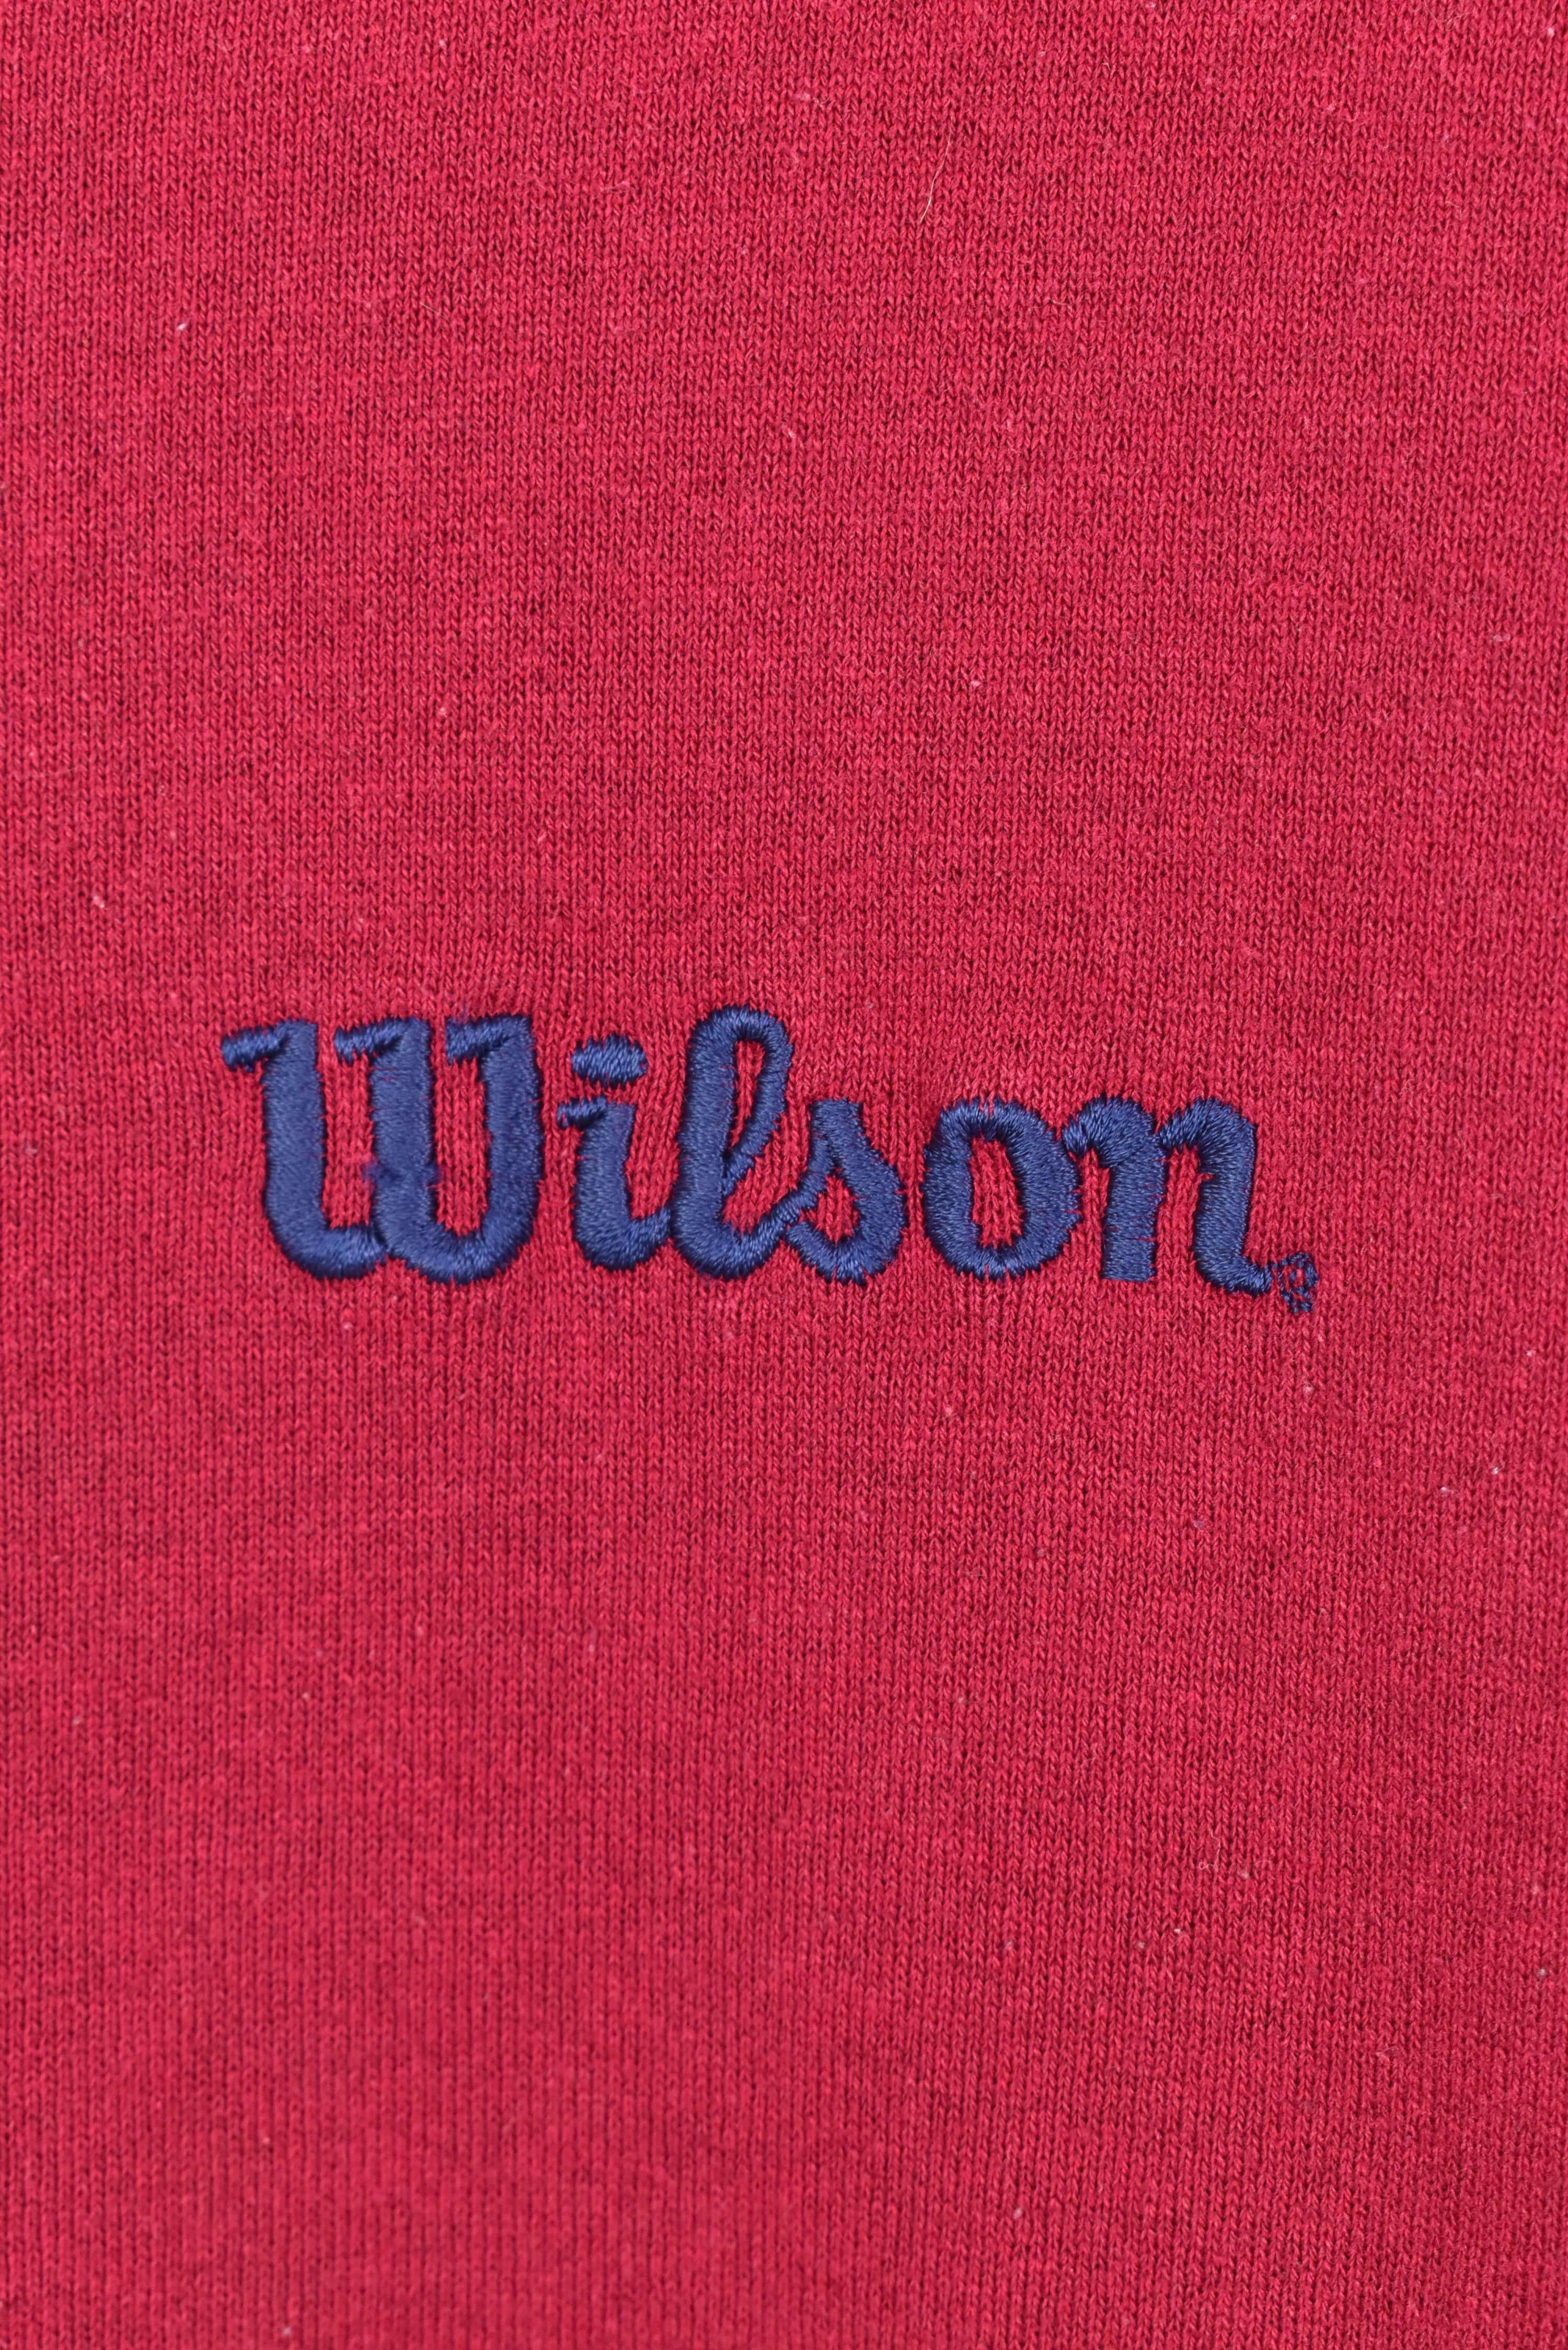 VINTAGE WILSON EMBROIDERED RED SWEATSHIRT | XXL WILSON